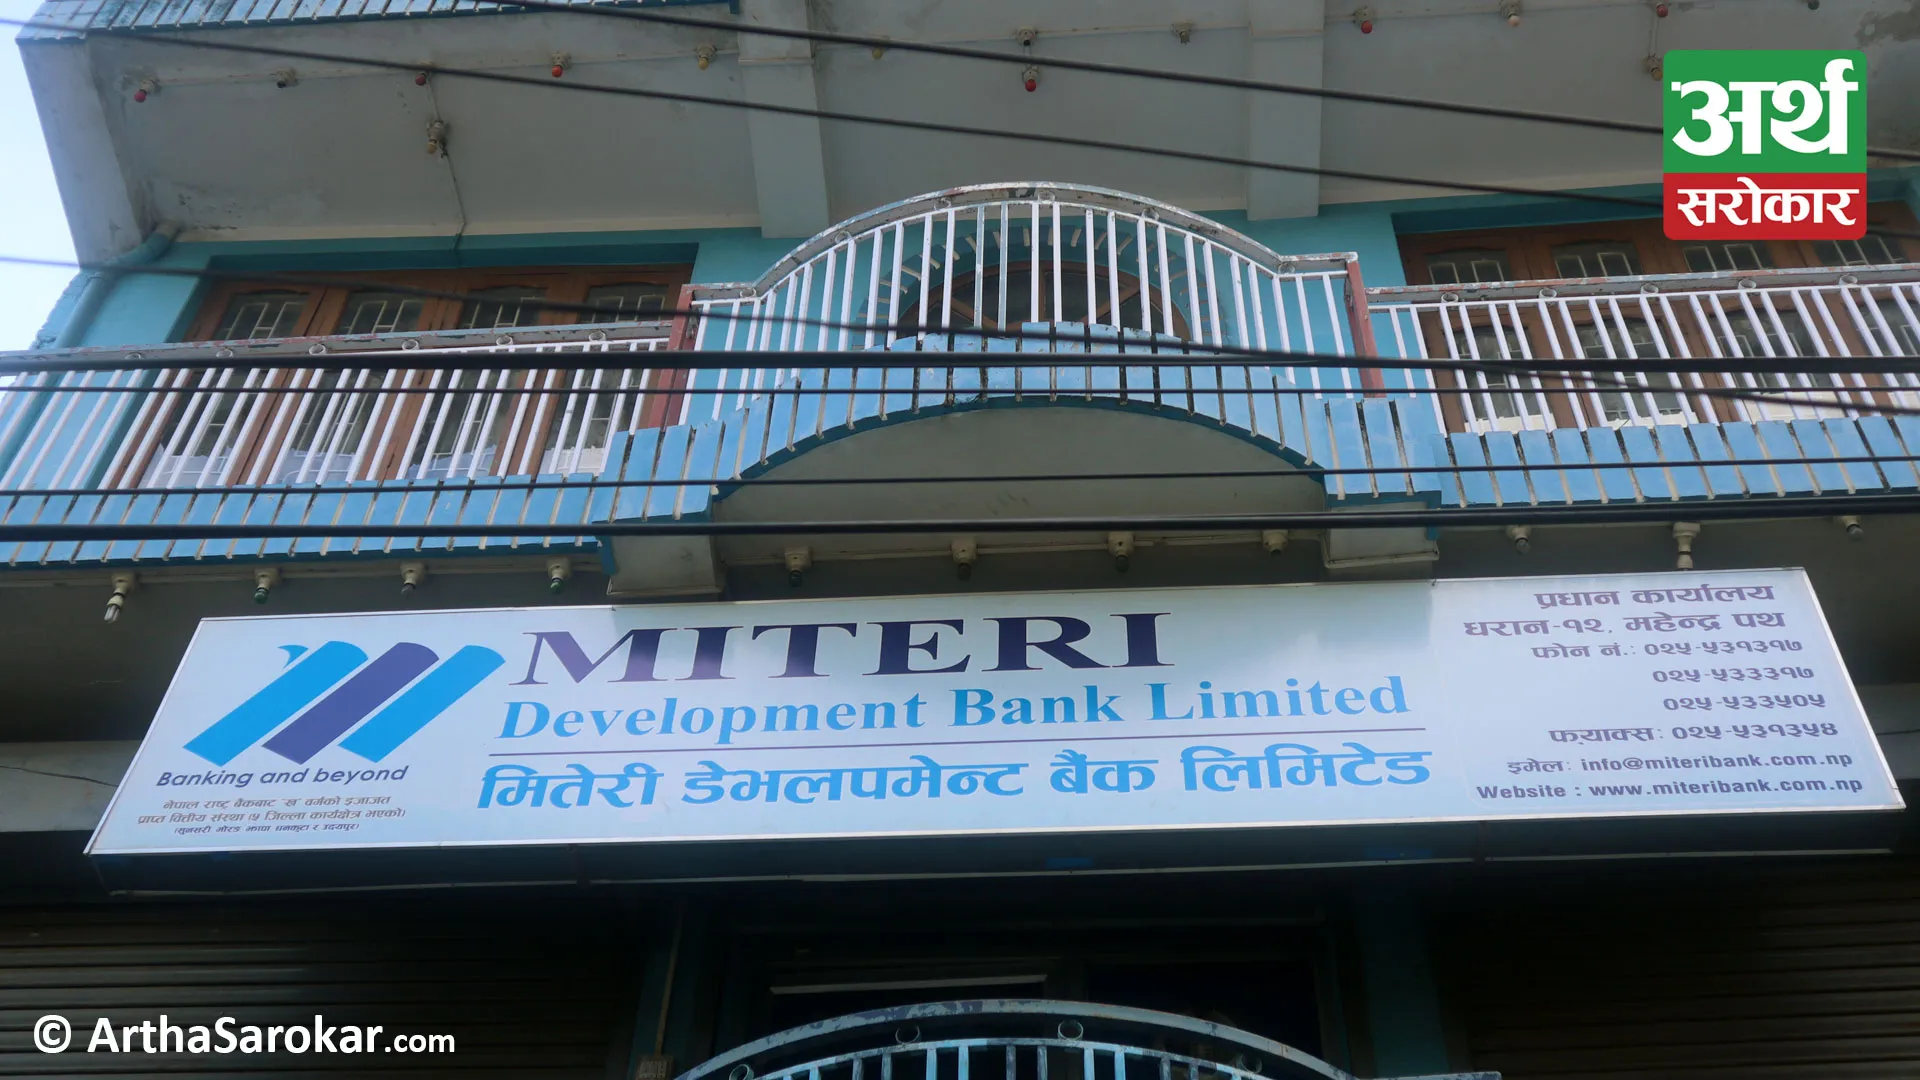 Miteri Development Bank announced 10% dividend